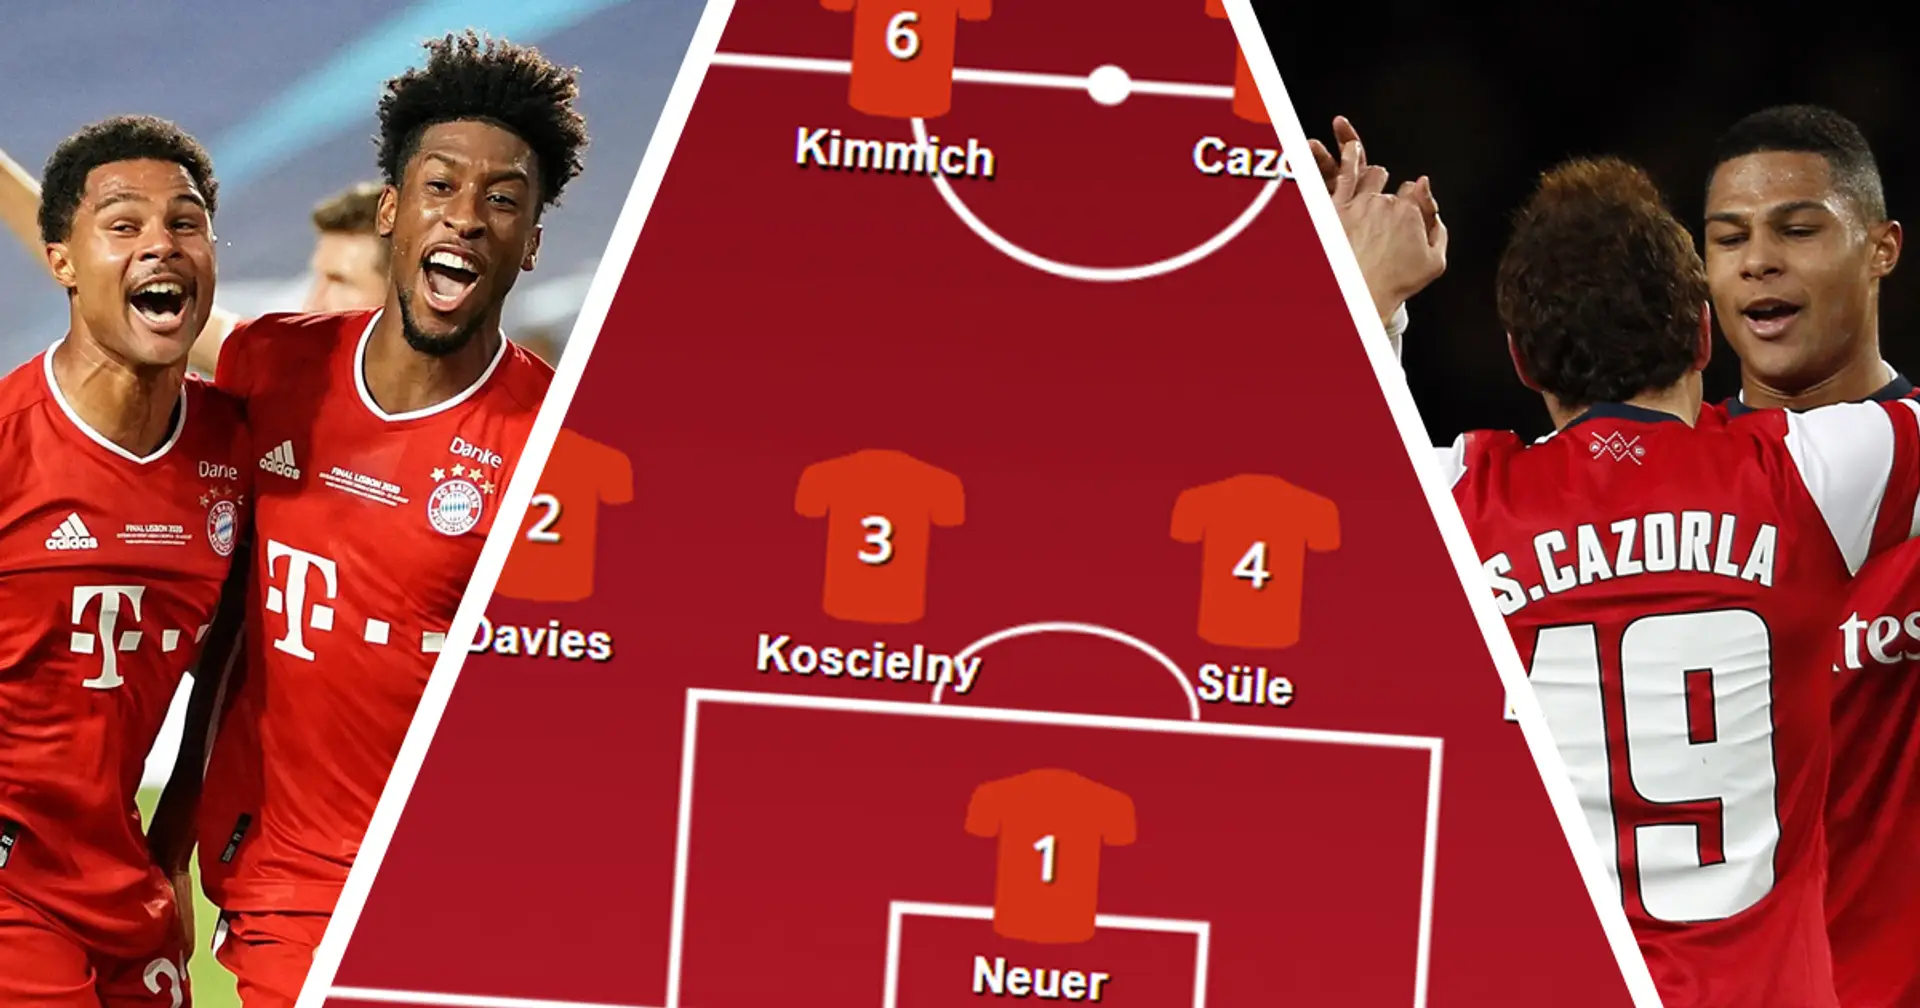 7 x Bayern, 4 x Arsenal: Serge Gnabry wählt seine Traumelf und es gibt einige Überraschungen!